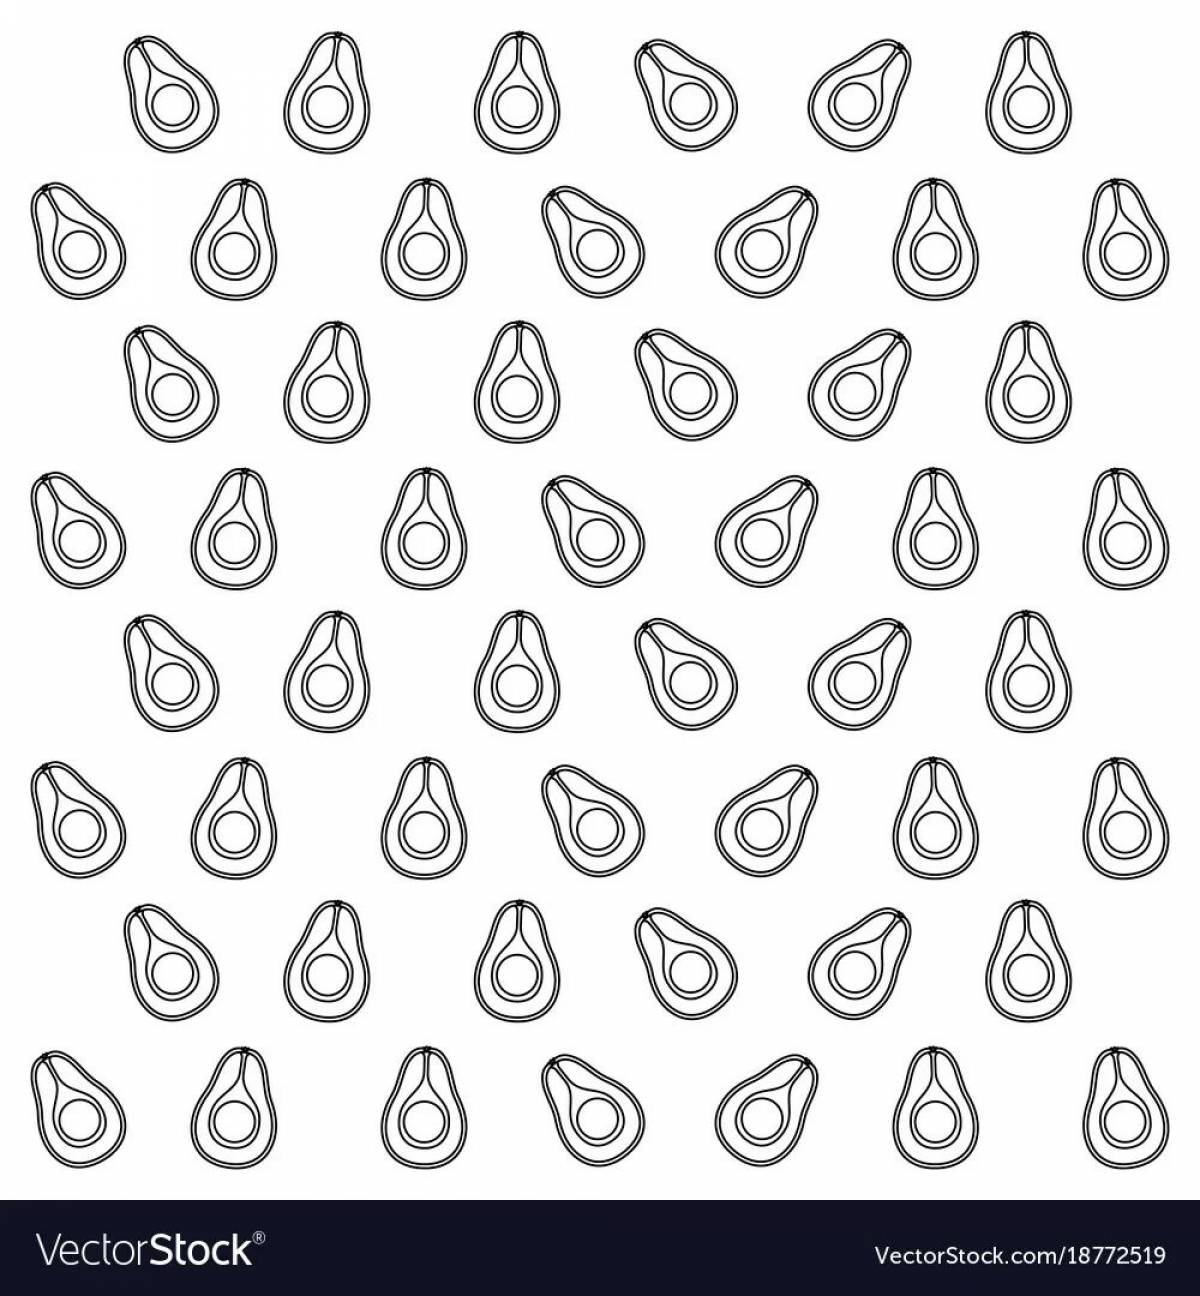 Impressive avocado sticker coloring page